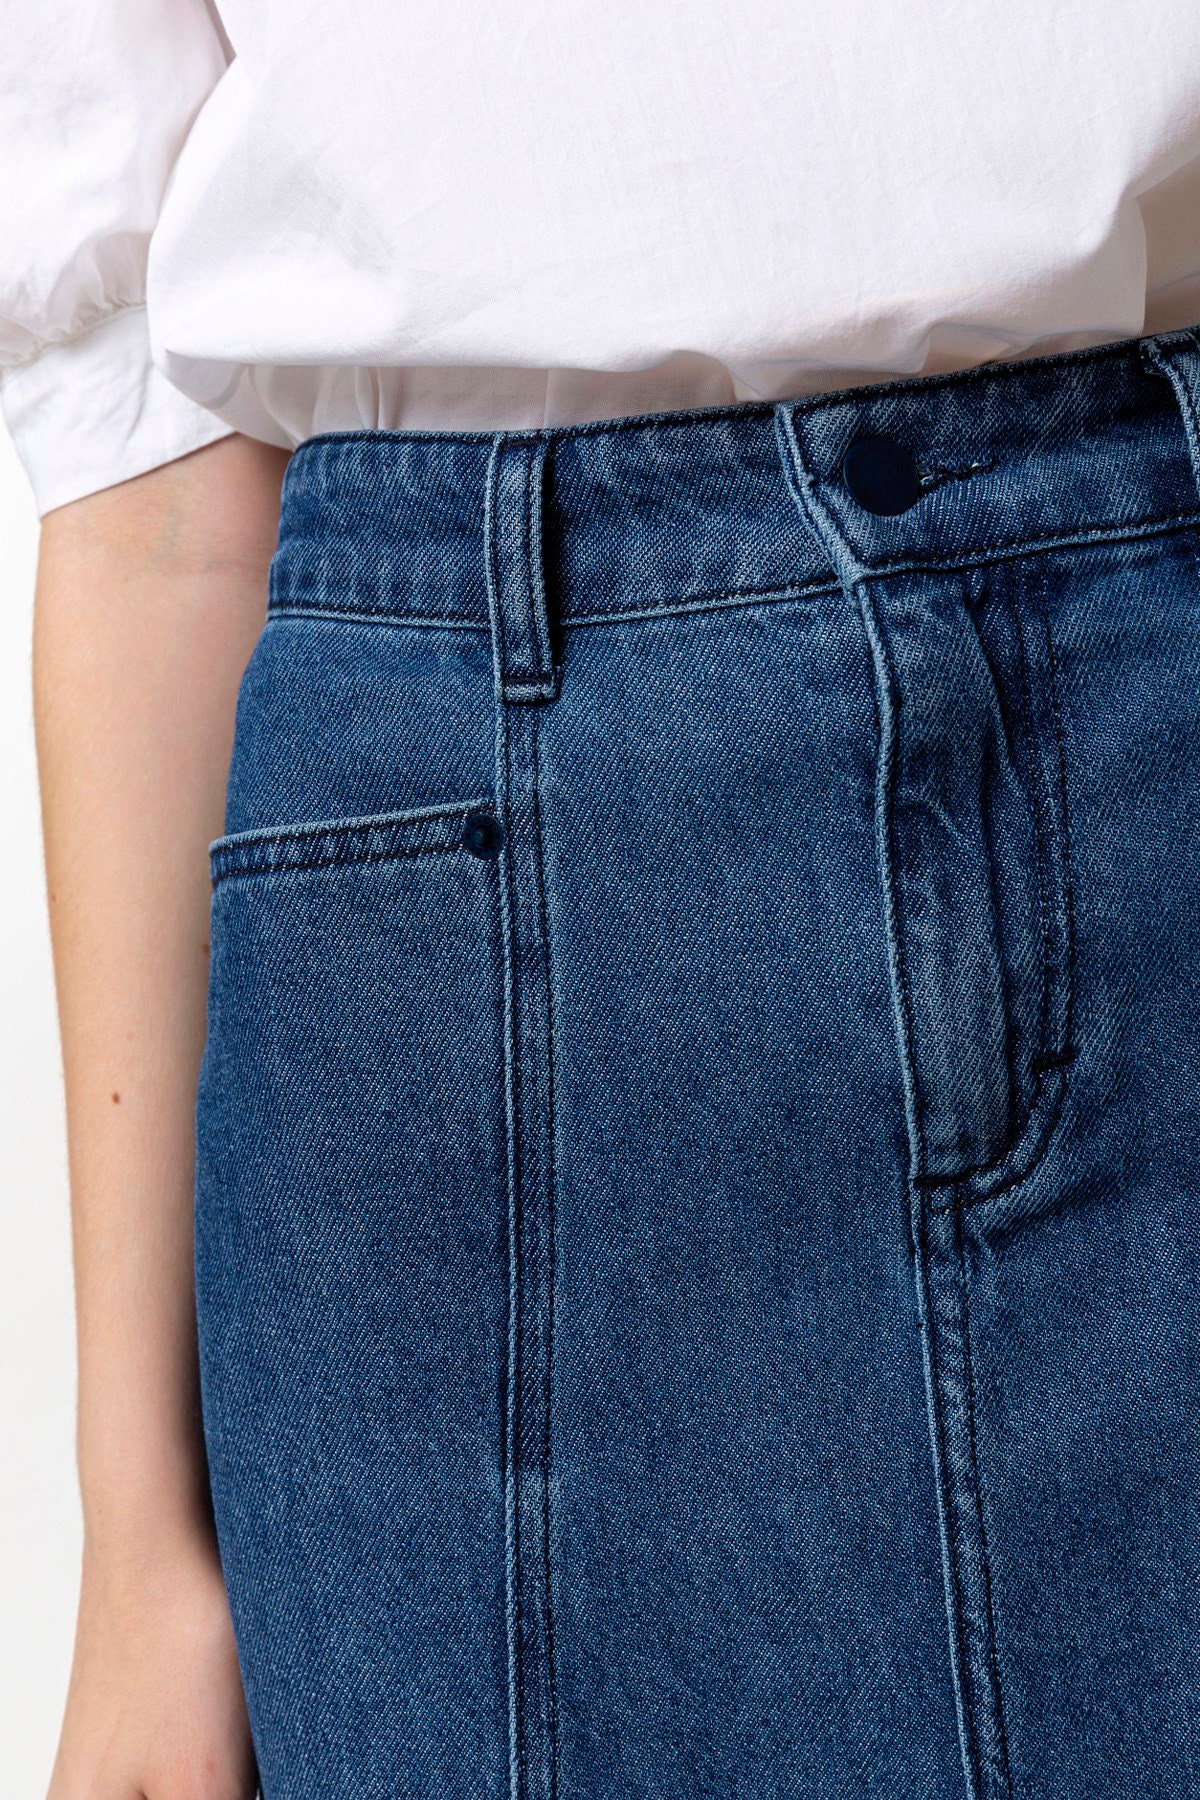 Medium Wash Denim Maxi Gored Skirt Long full Length Modest | Etsy